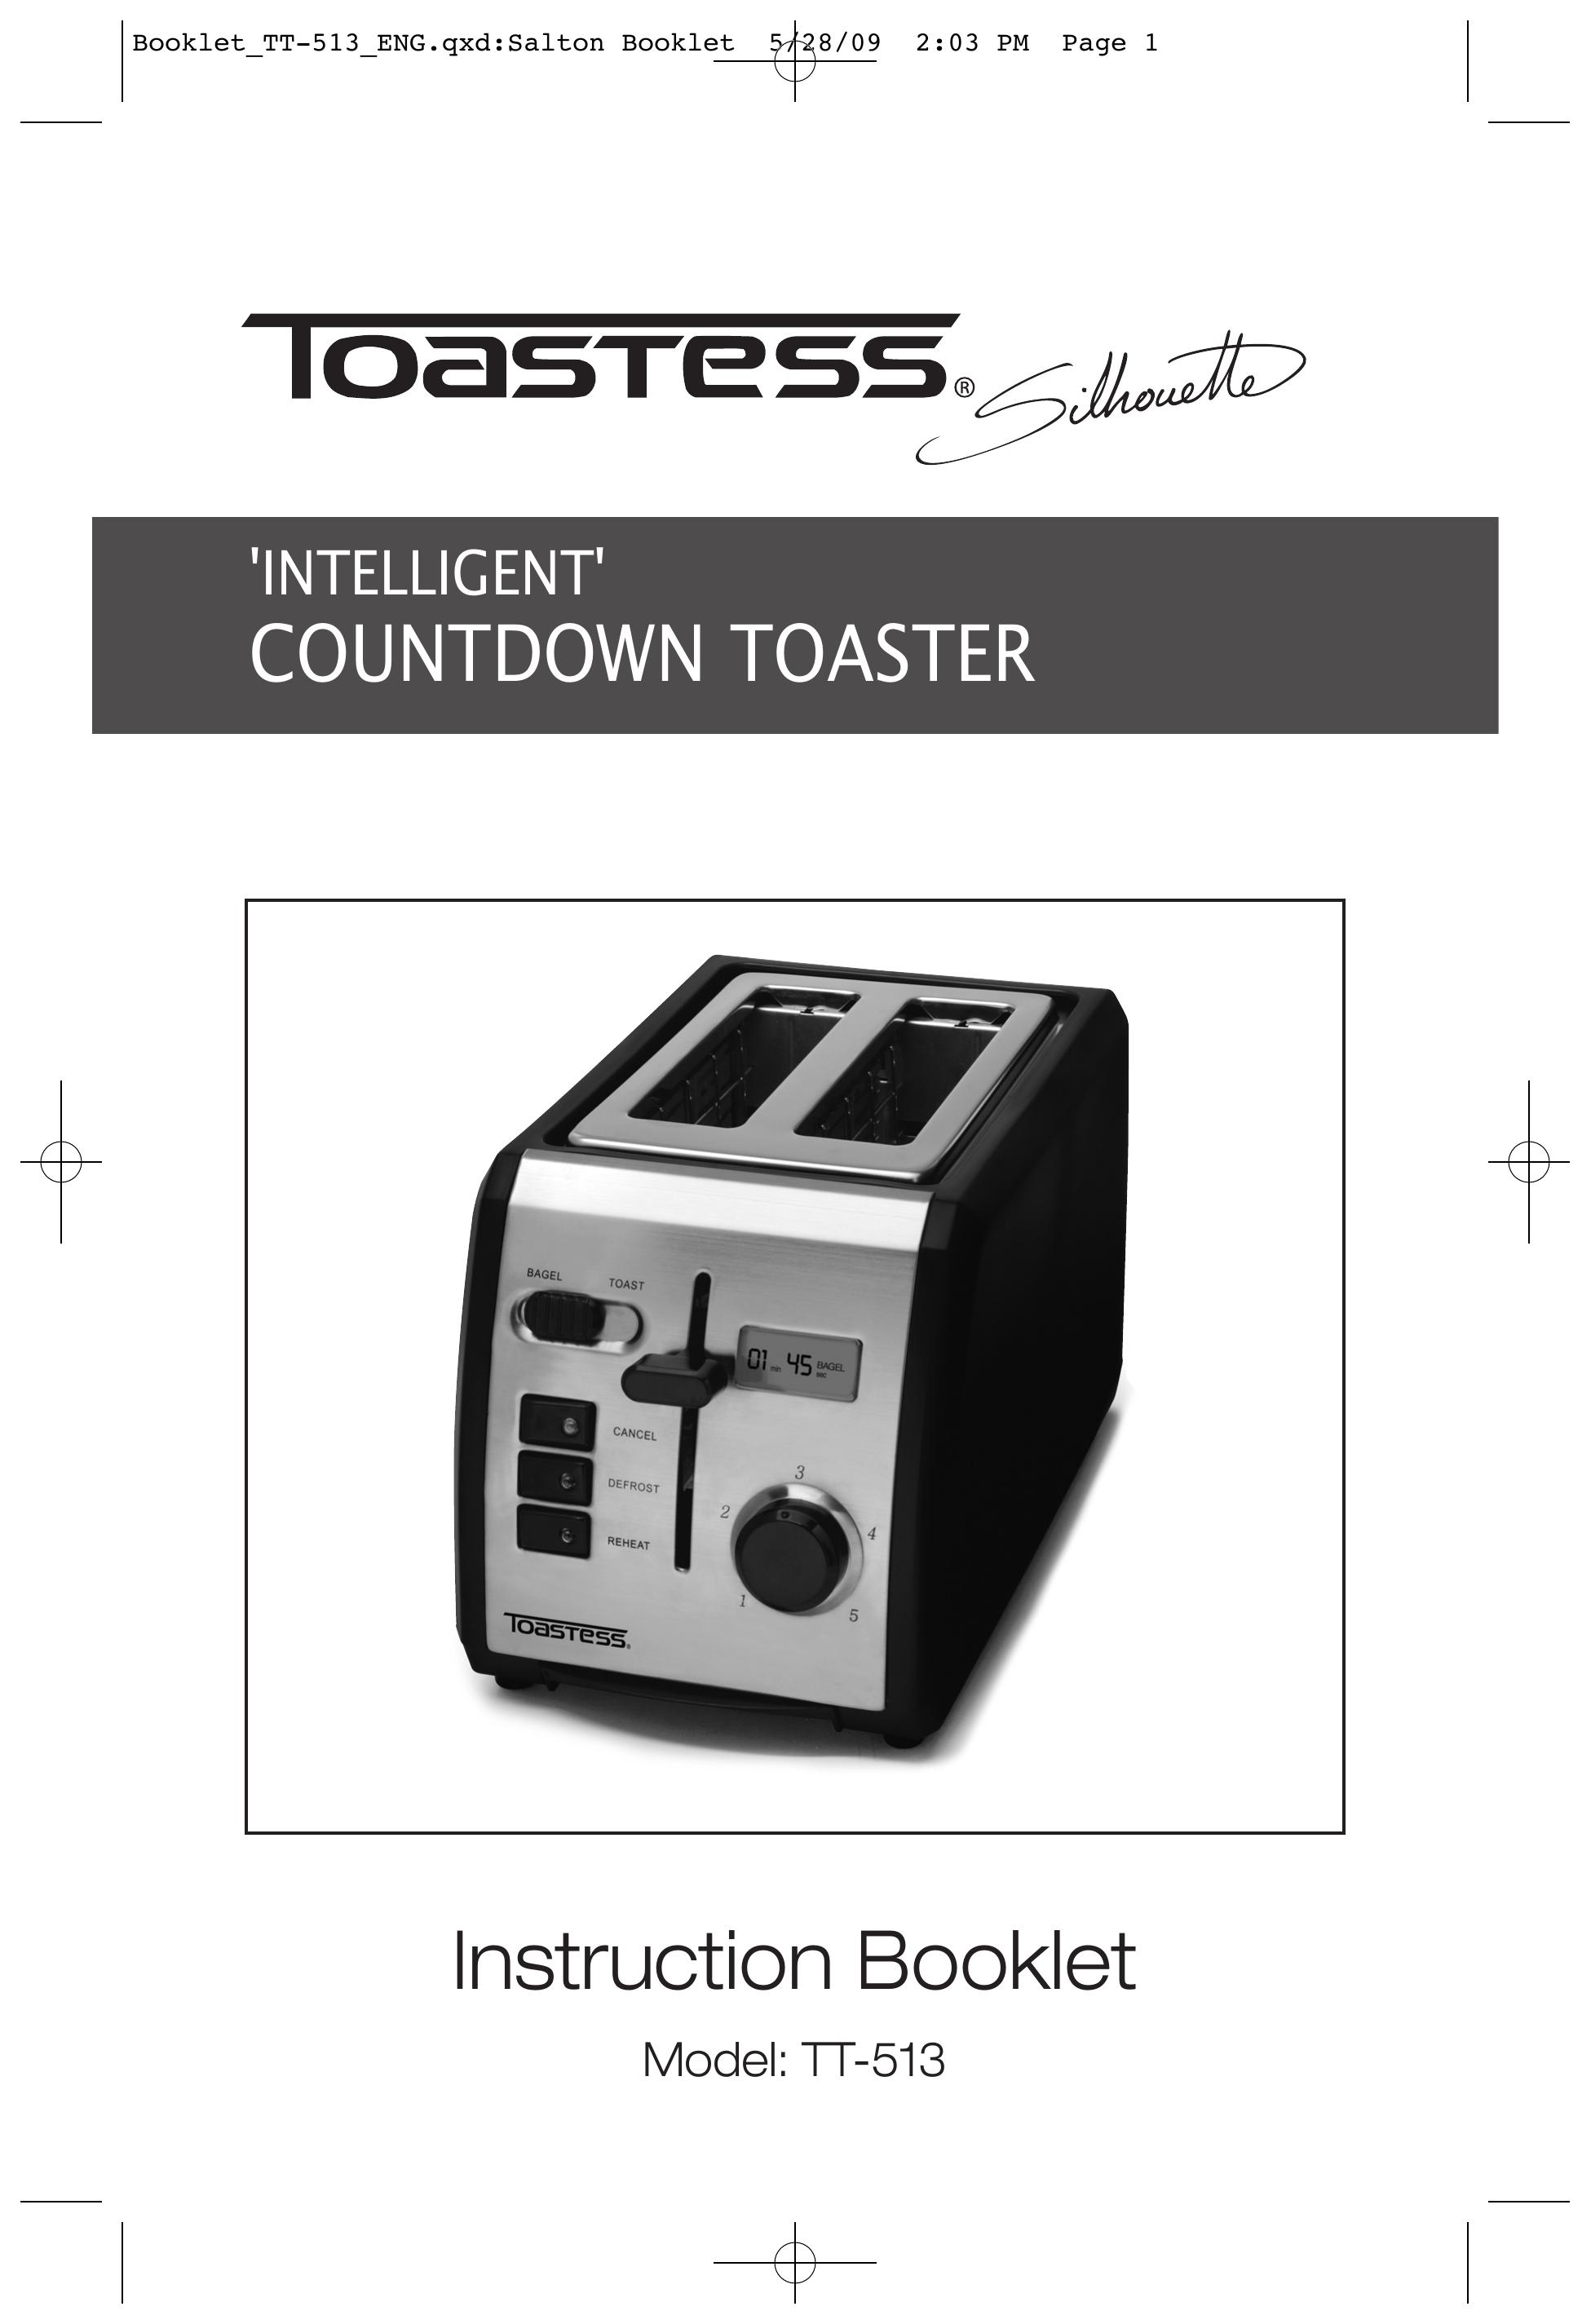 Toastess TT-513 Toaster User Manual